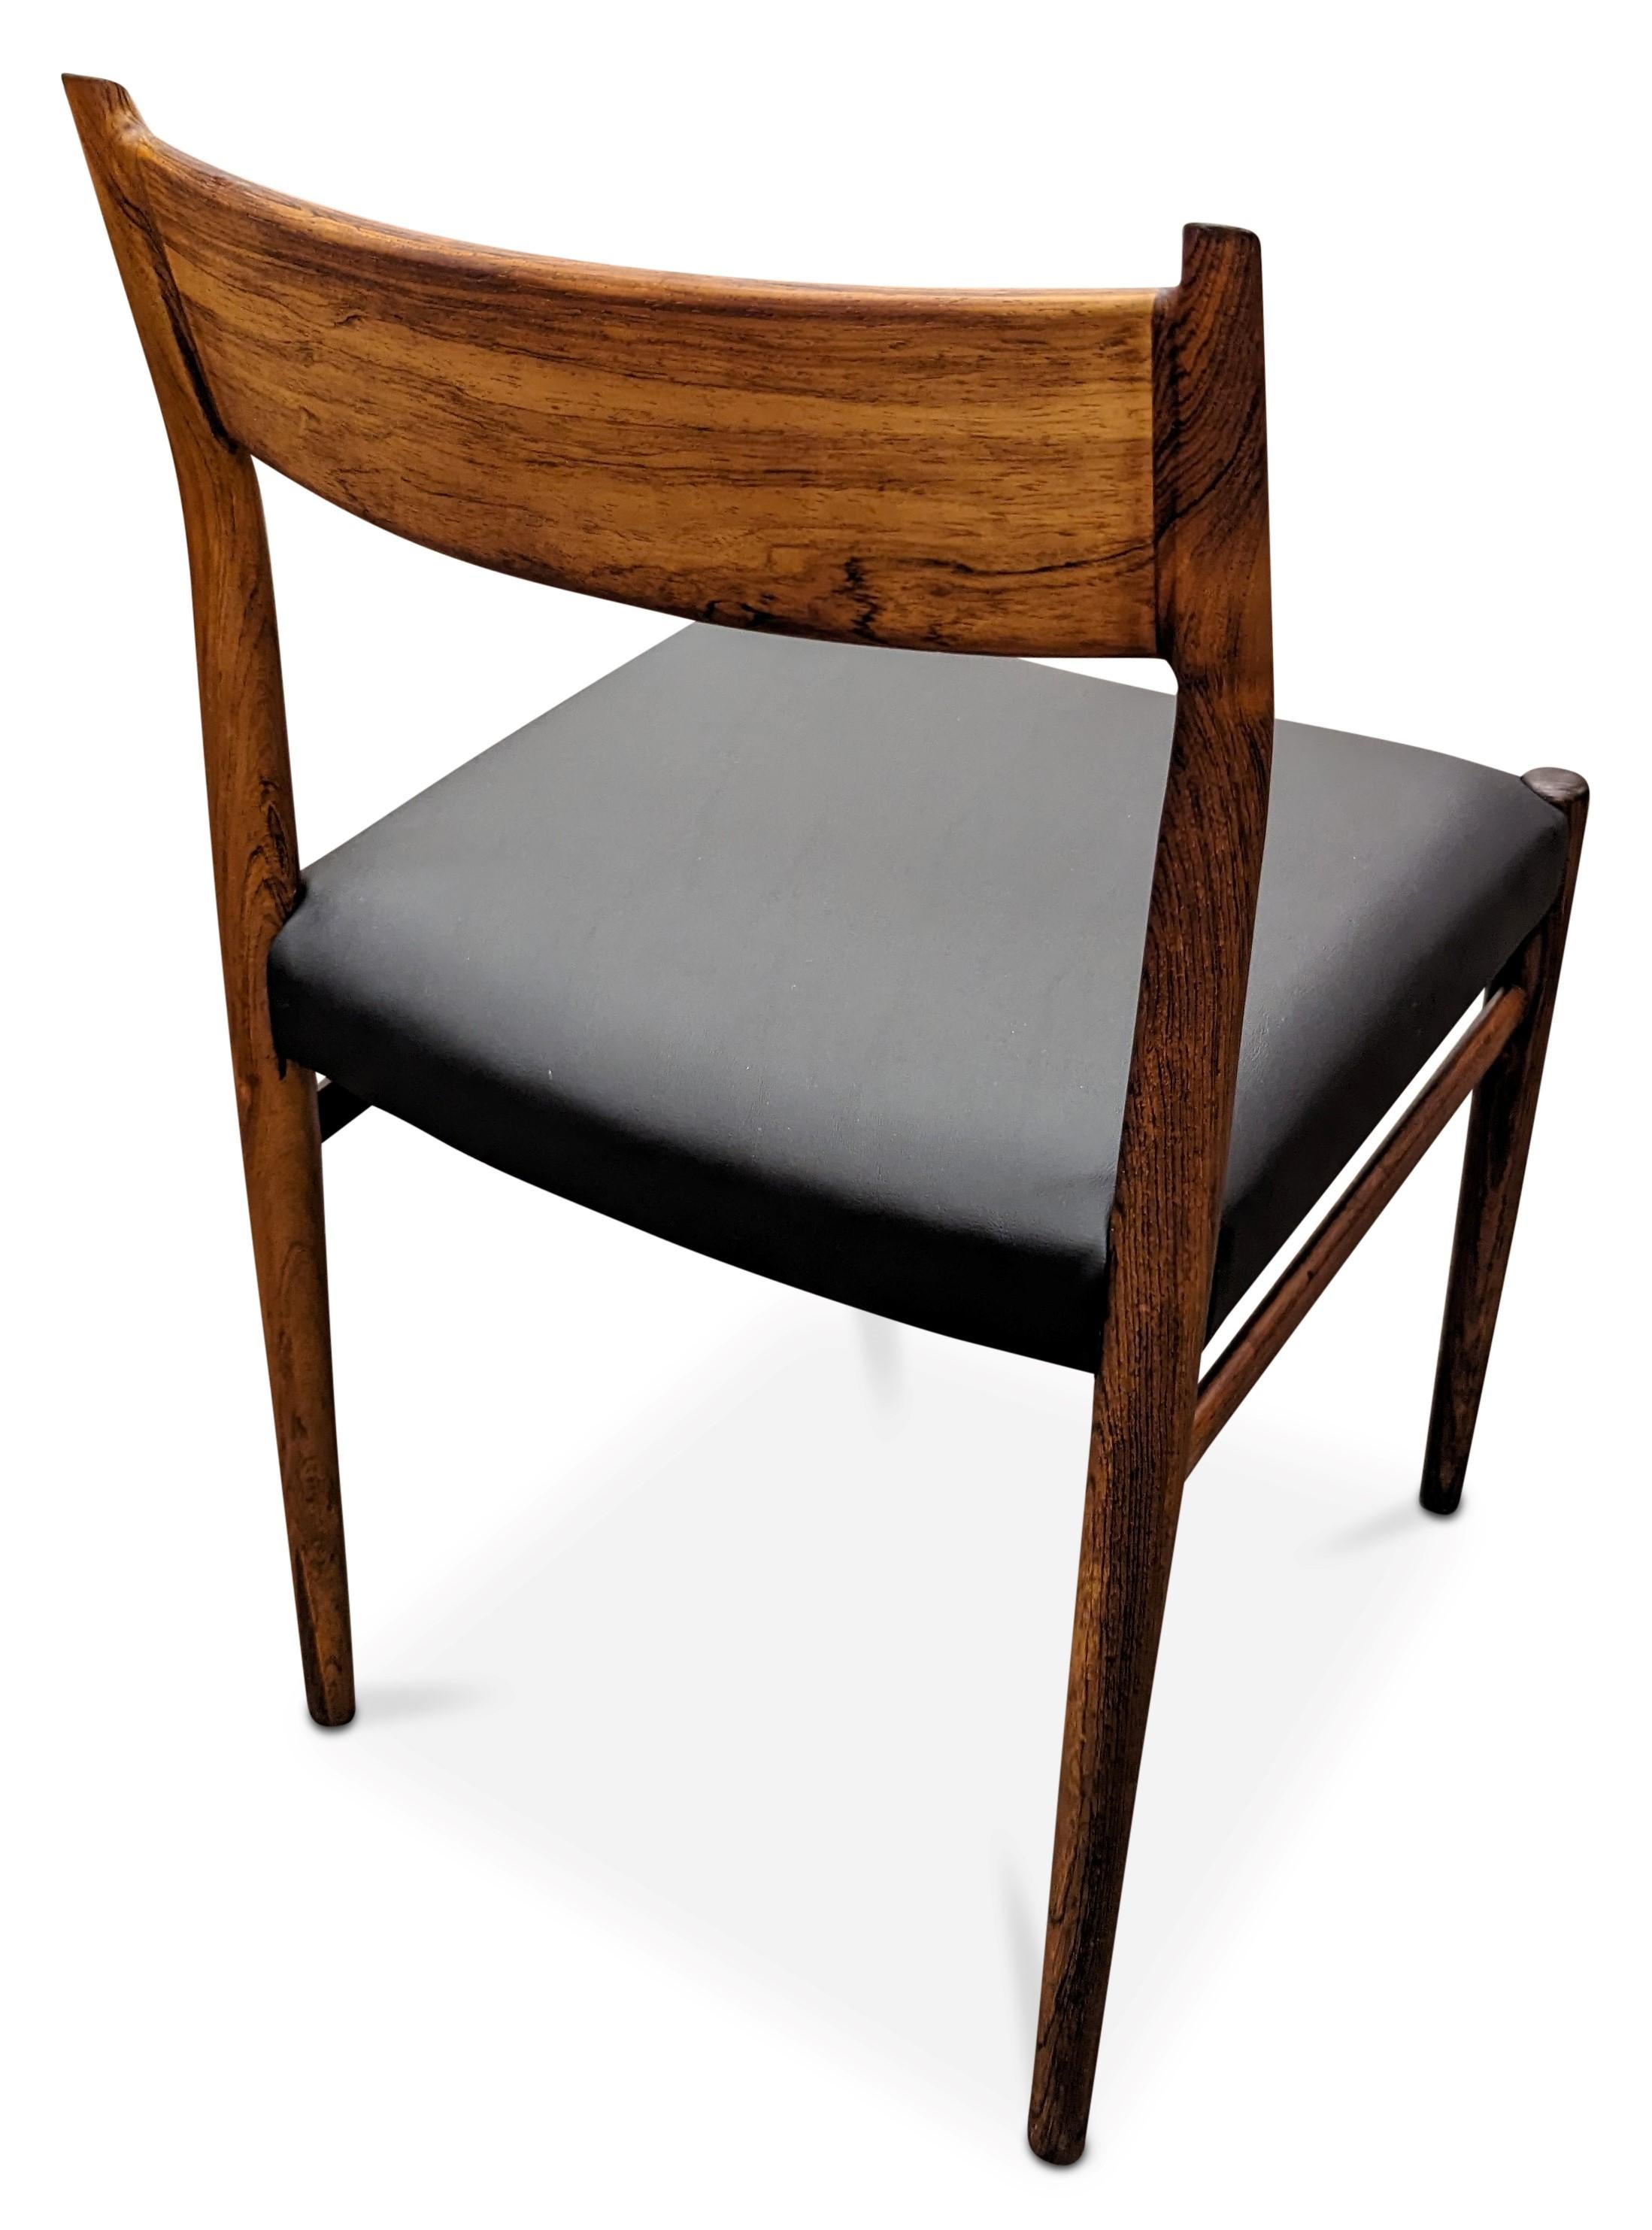 Vintage Danish Arne Vodder for Sibast Mobler Rosewood Dining Chair - 082316 For Sale 1